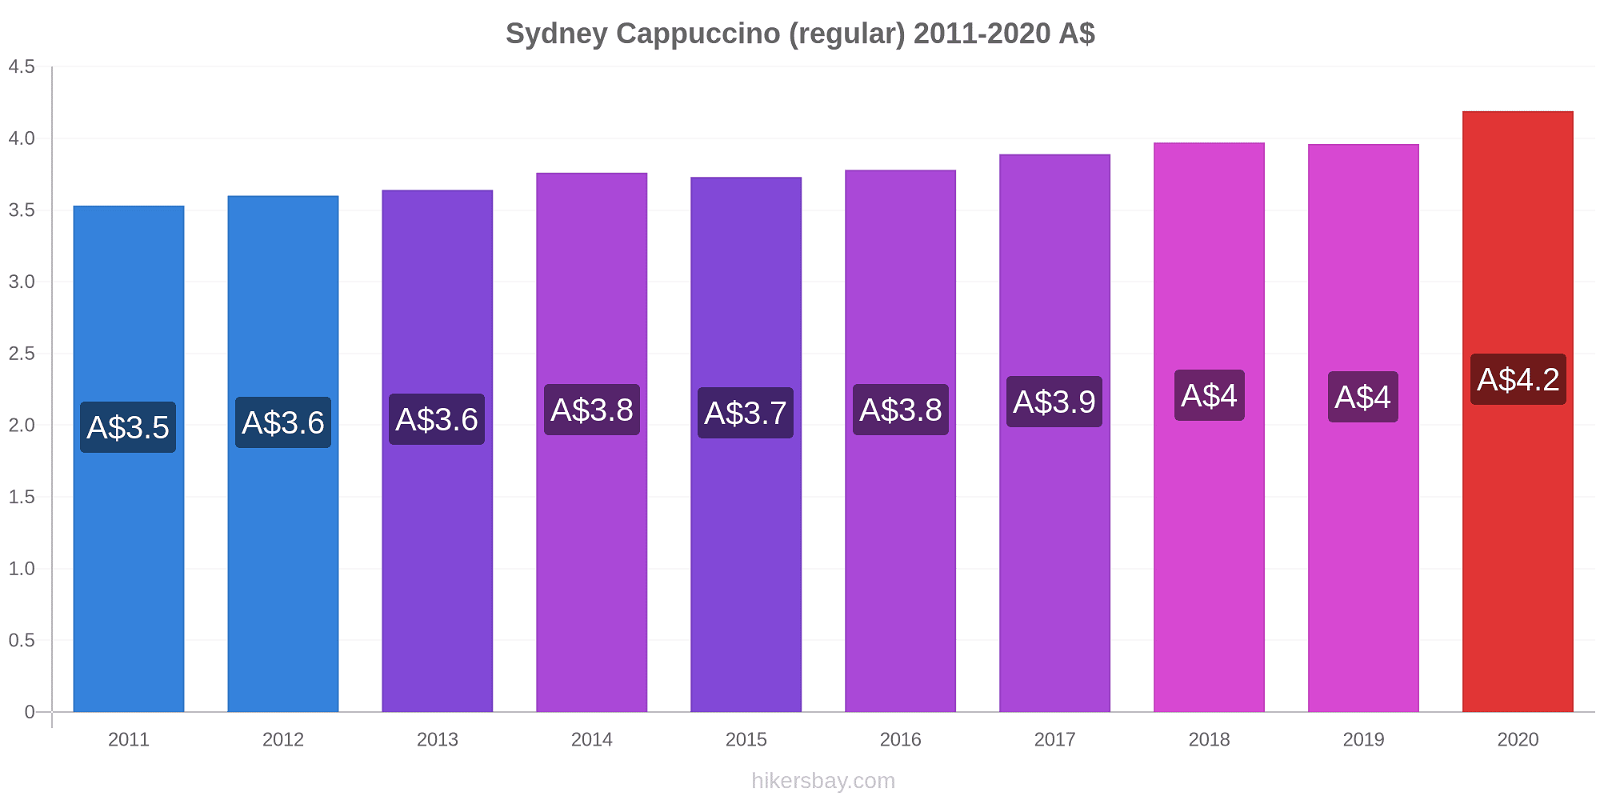 Sydney price changes Cappuccino (regular) hikersbay.com